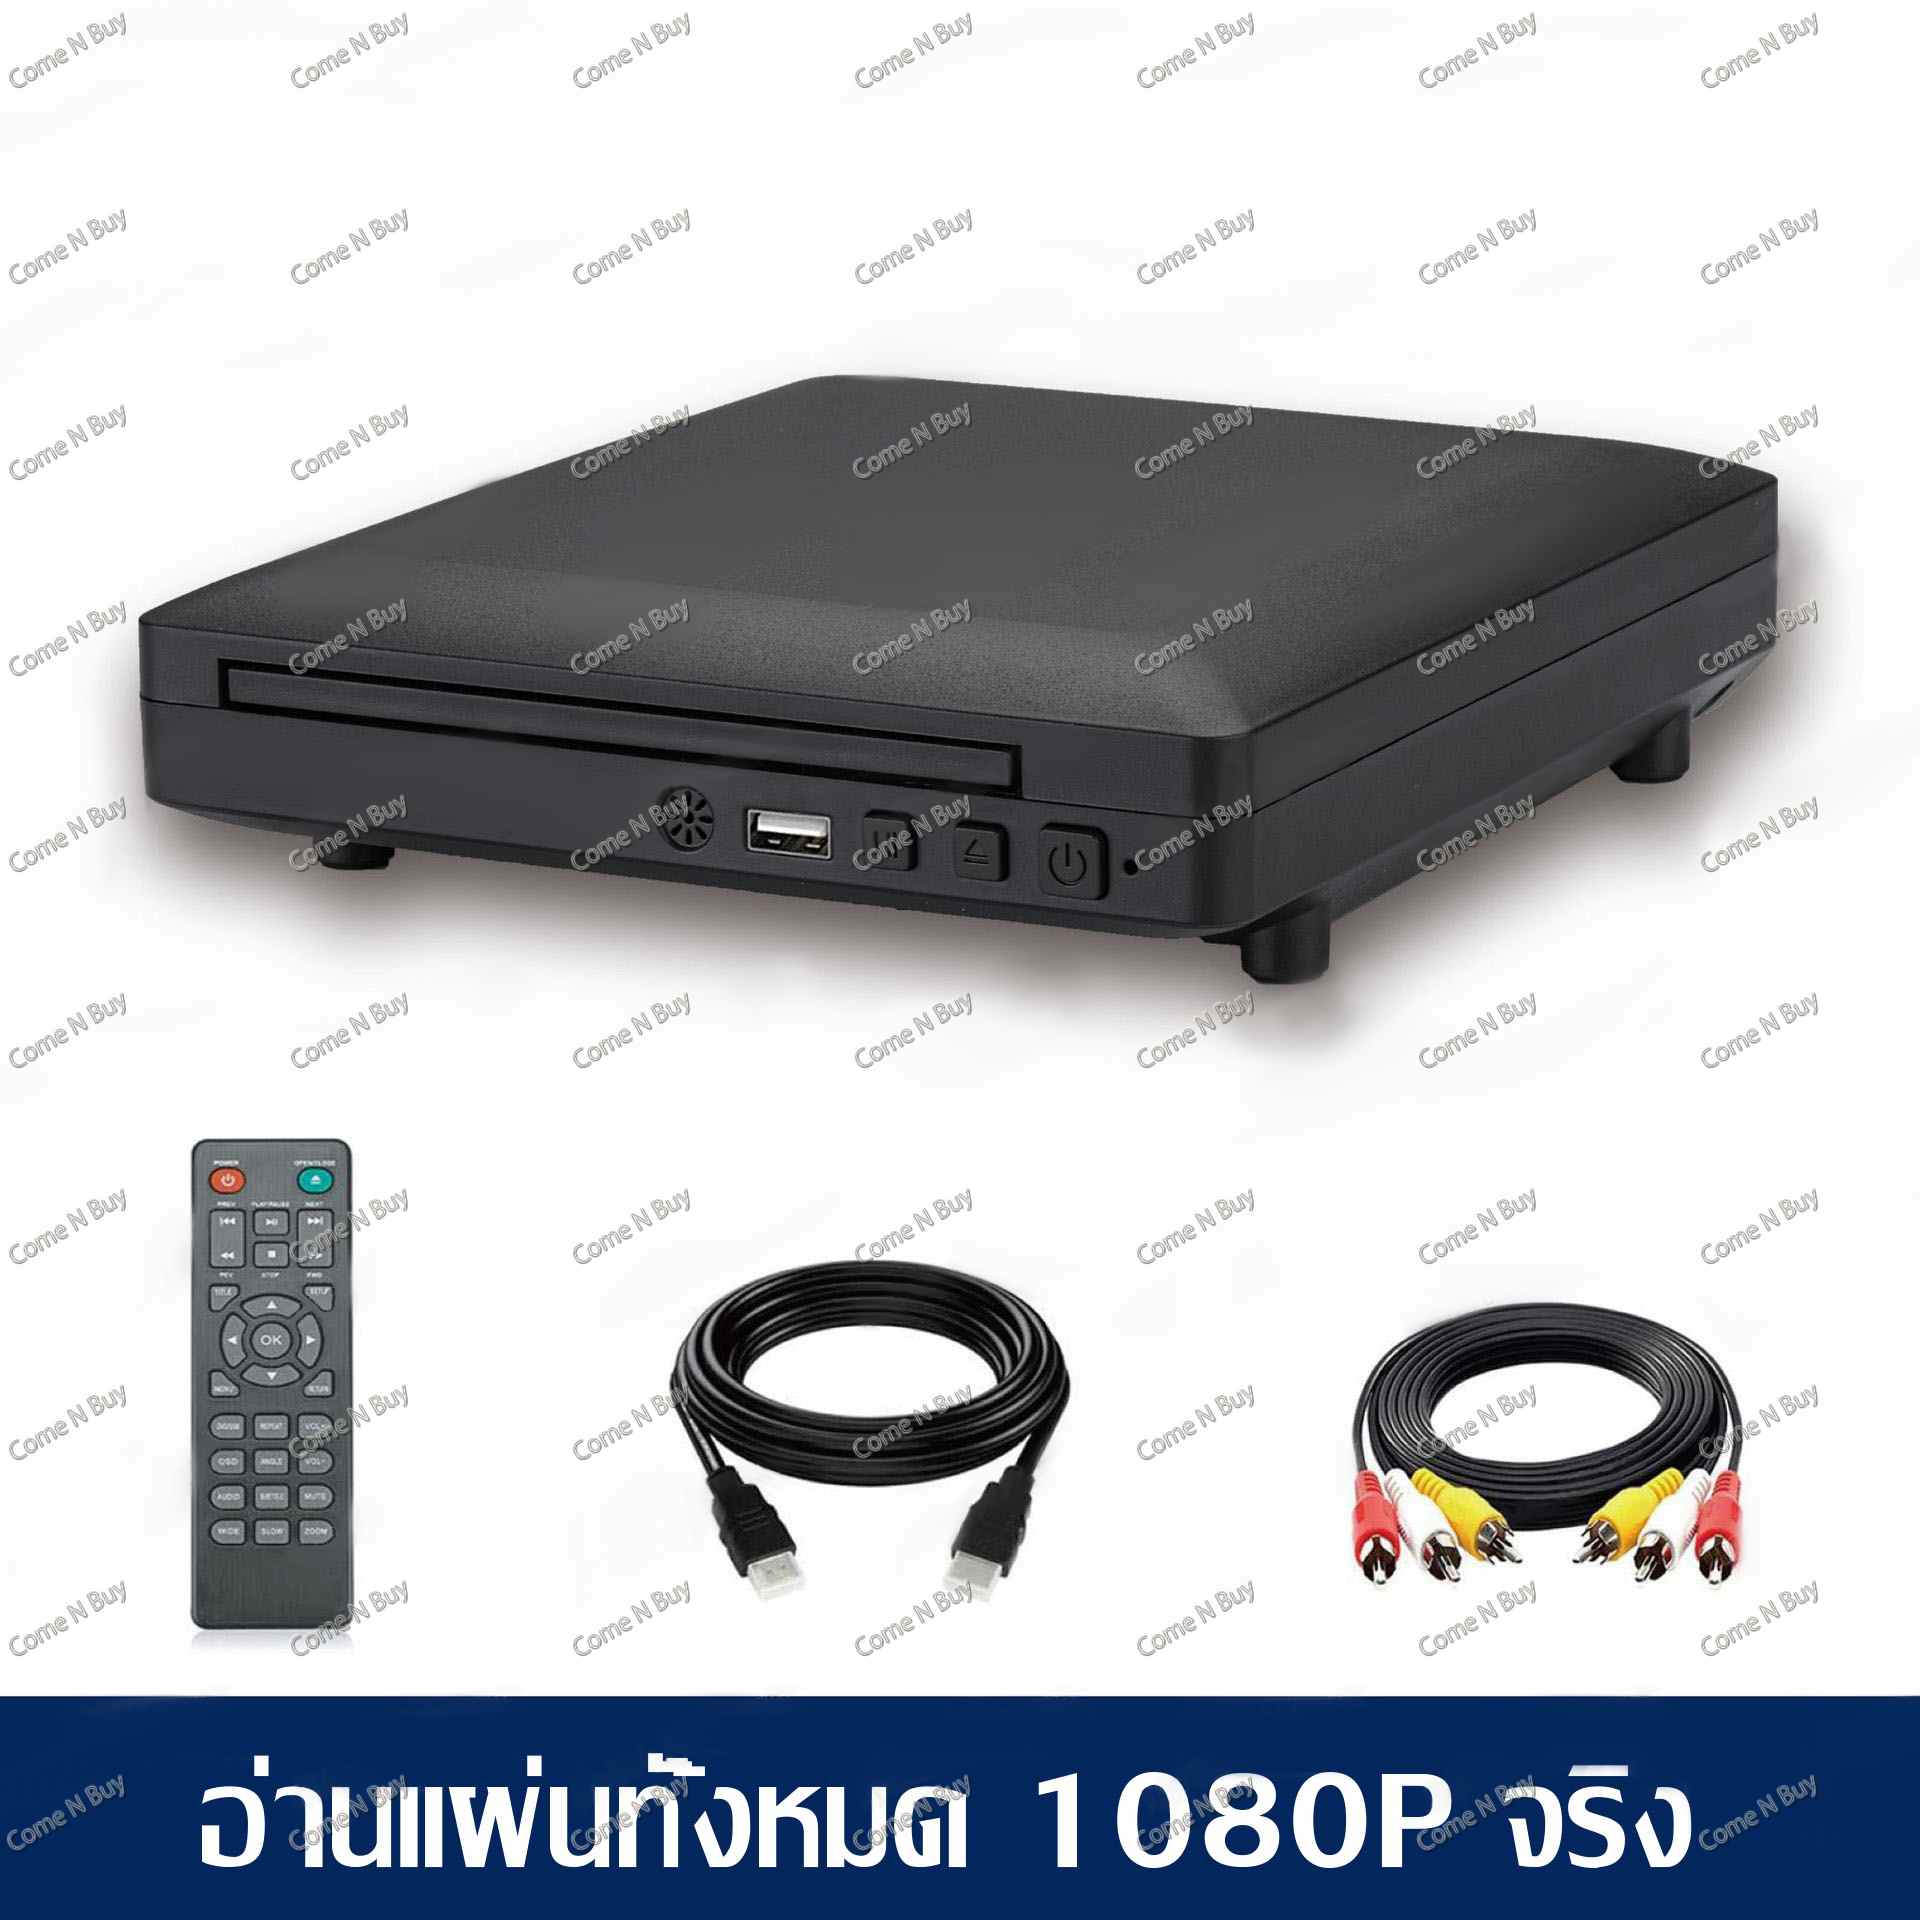 เครื่องเล่น DVD เครื่องเล่น DVD&USB เครื่องเล่น DVD/VCD/CD/USB เครื่องแผ่นCD/DVD เครื่องเล่นแผ่นดีวีดี เครื่องเล่นแผ่นวีซีดี เครื่องเล่นแผ่นซีดี เครื่องเล่นวิดีโอ เครื่องเล่นวิดีโอพร้อมสาย AV/HDMI